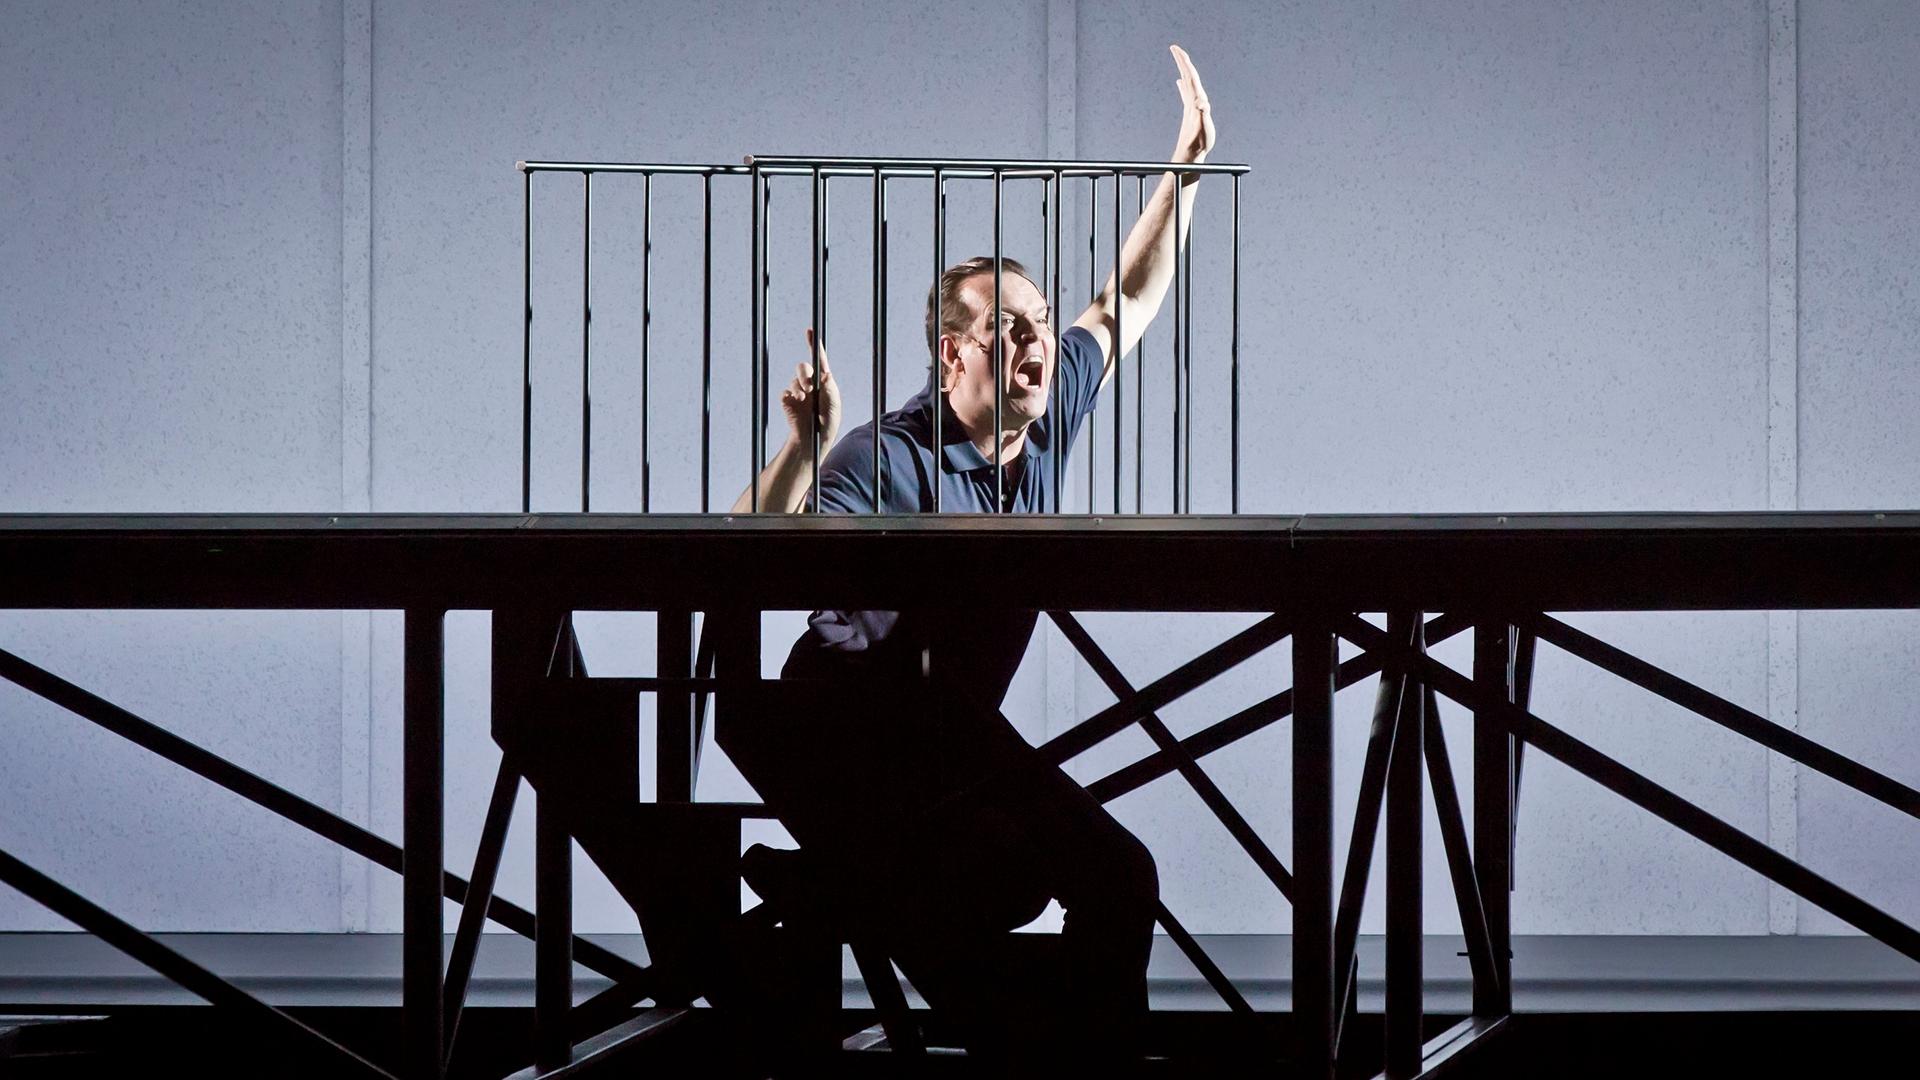 In der Inszenierung von "M - Eine Stadt sucht einen Mörder" steht der Protagonist in einer Bühnenvorrichtung, die aussieht, als befände er sich in einer Zelle. Er winkt aufgeregt.